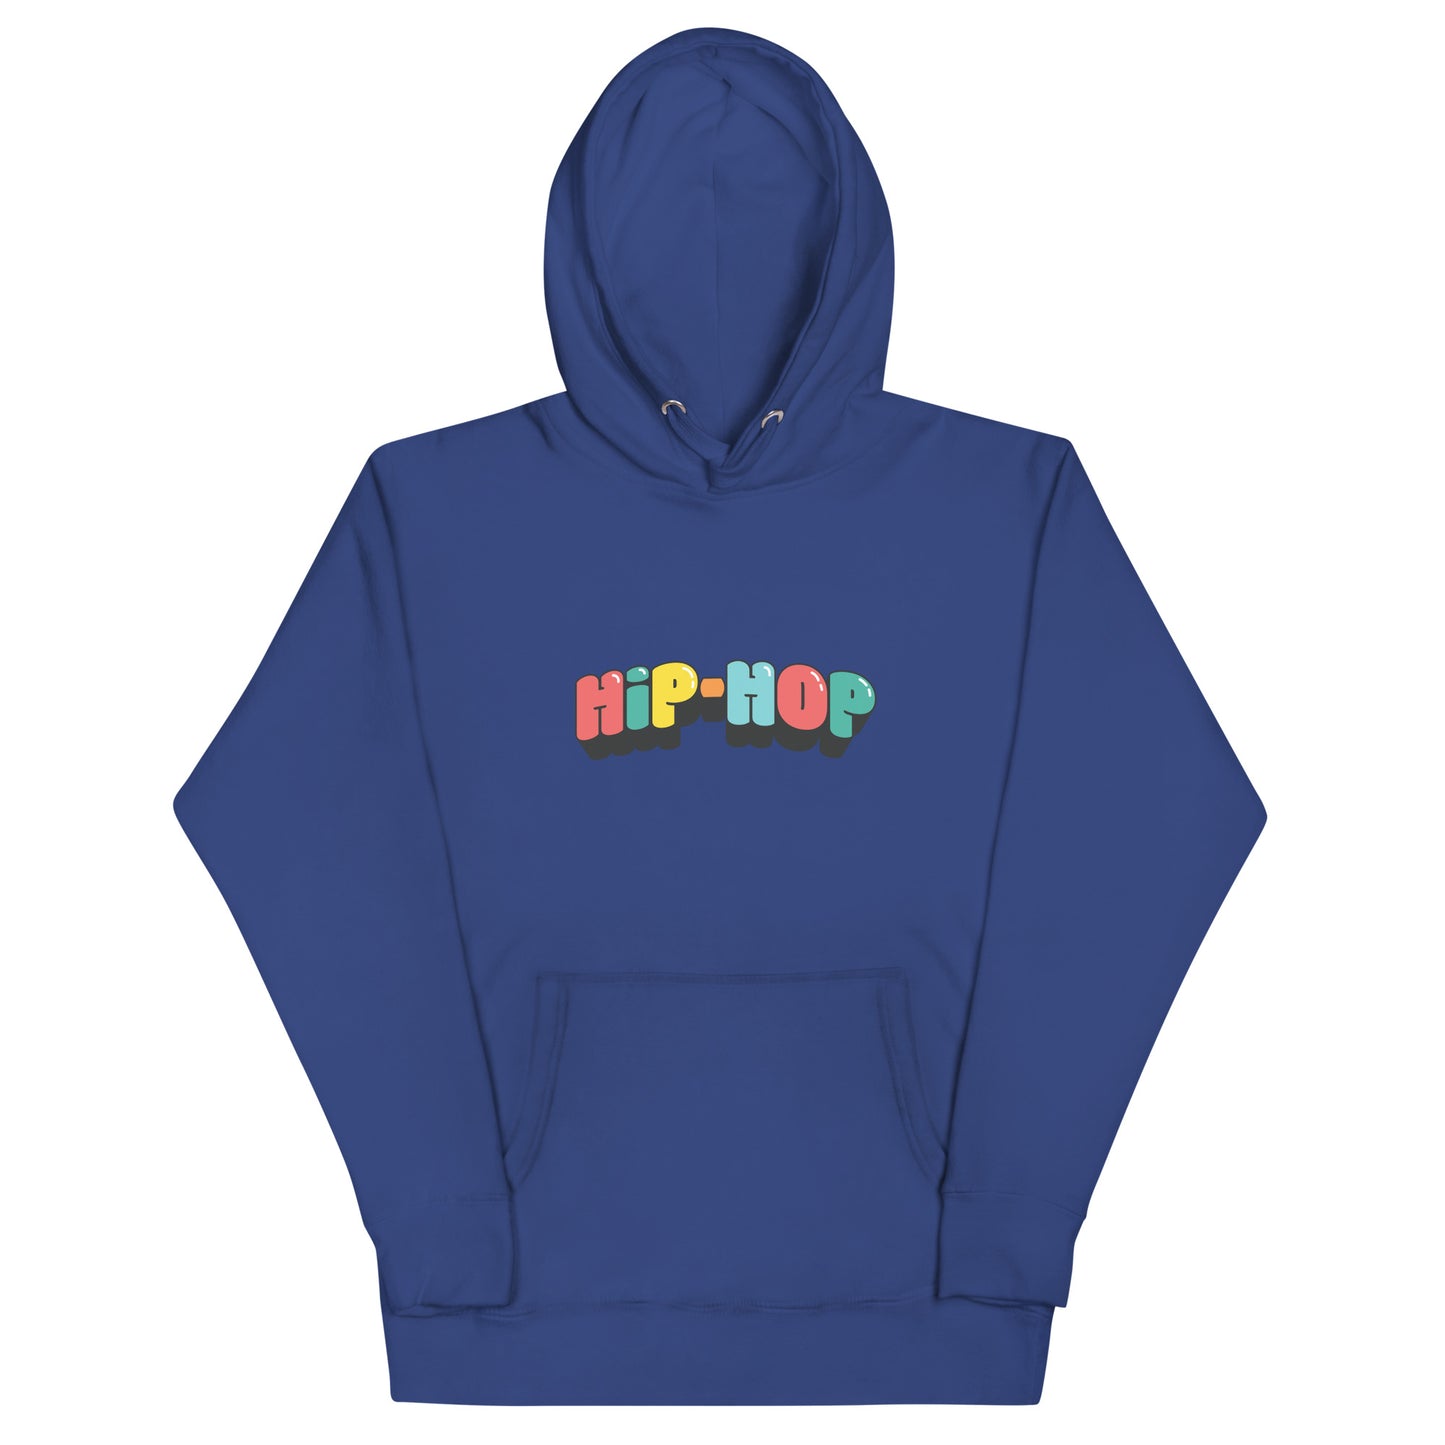 'HIP-HOP" Hoodie